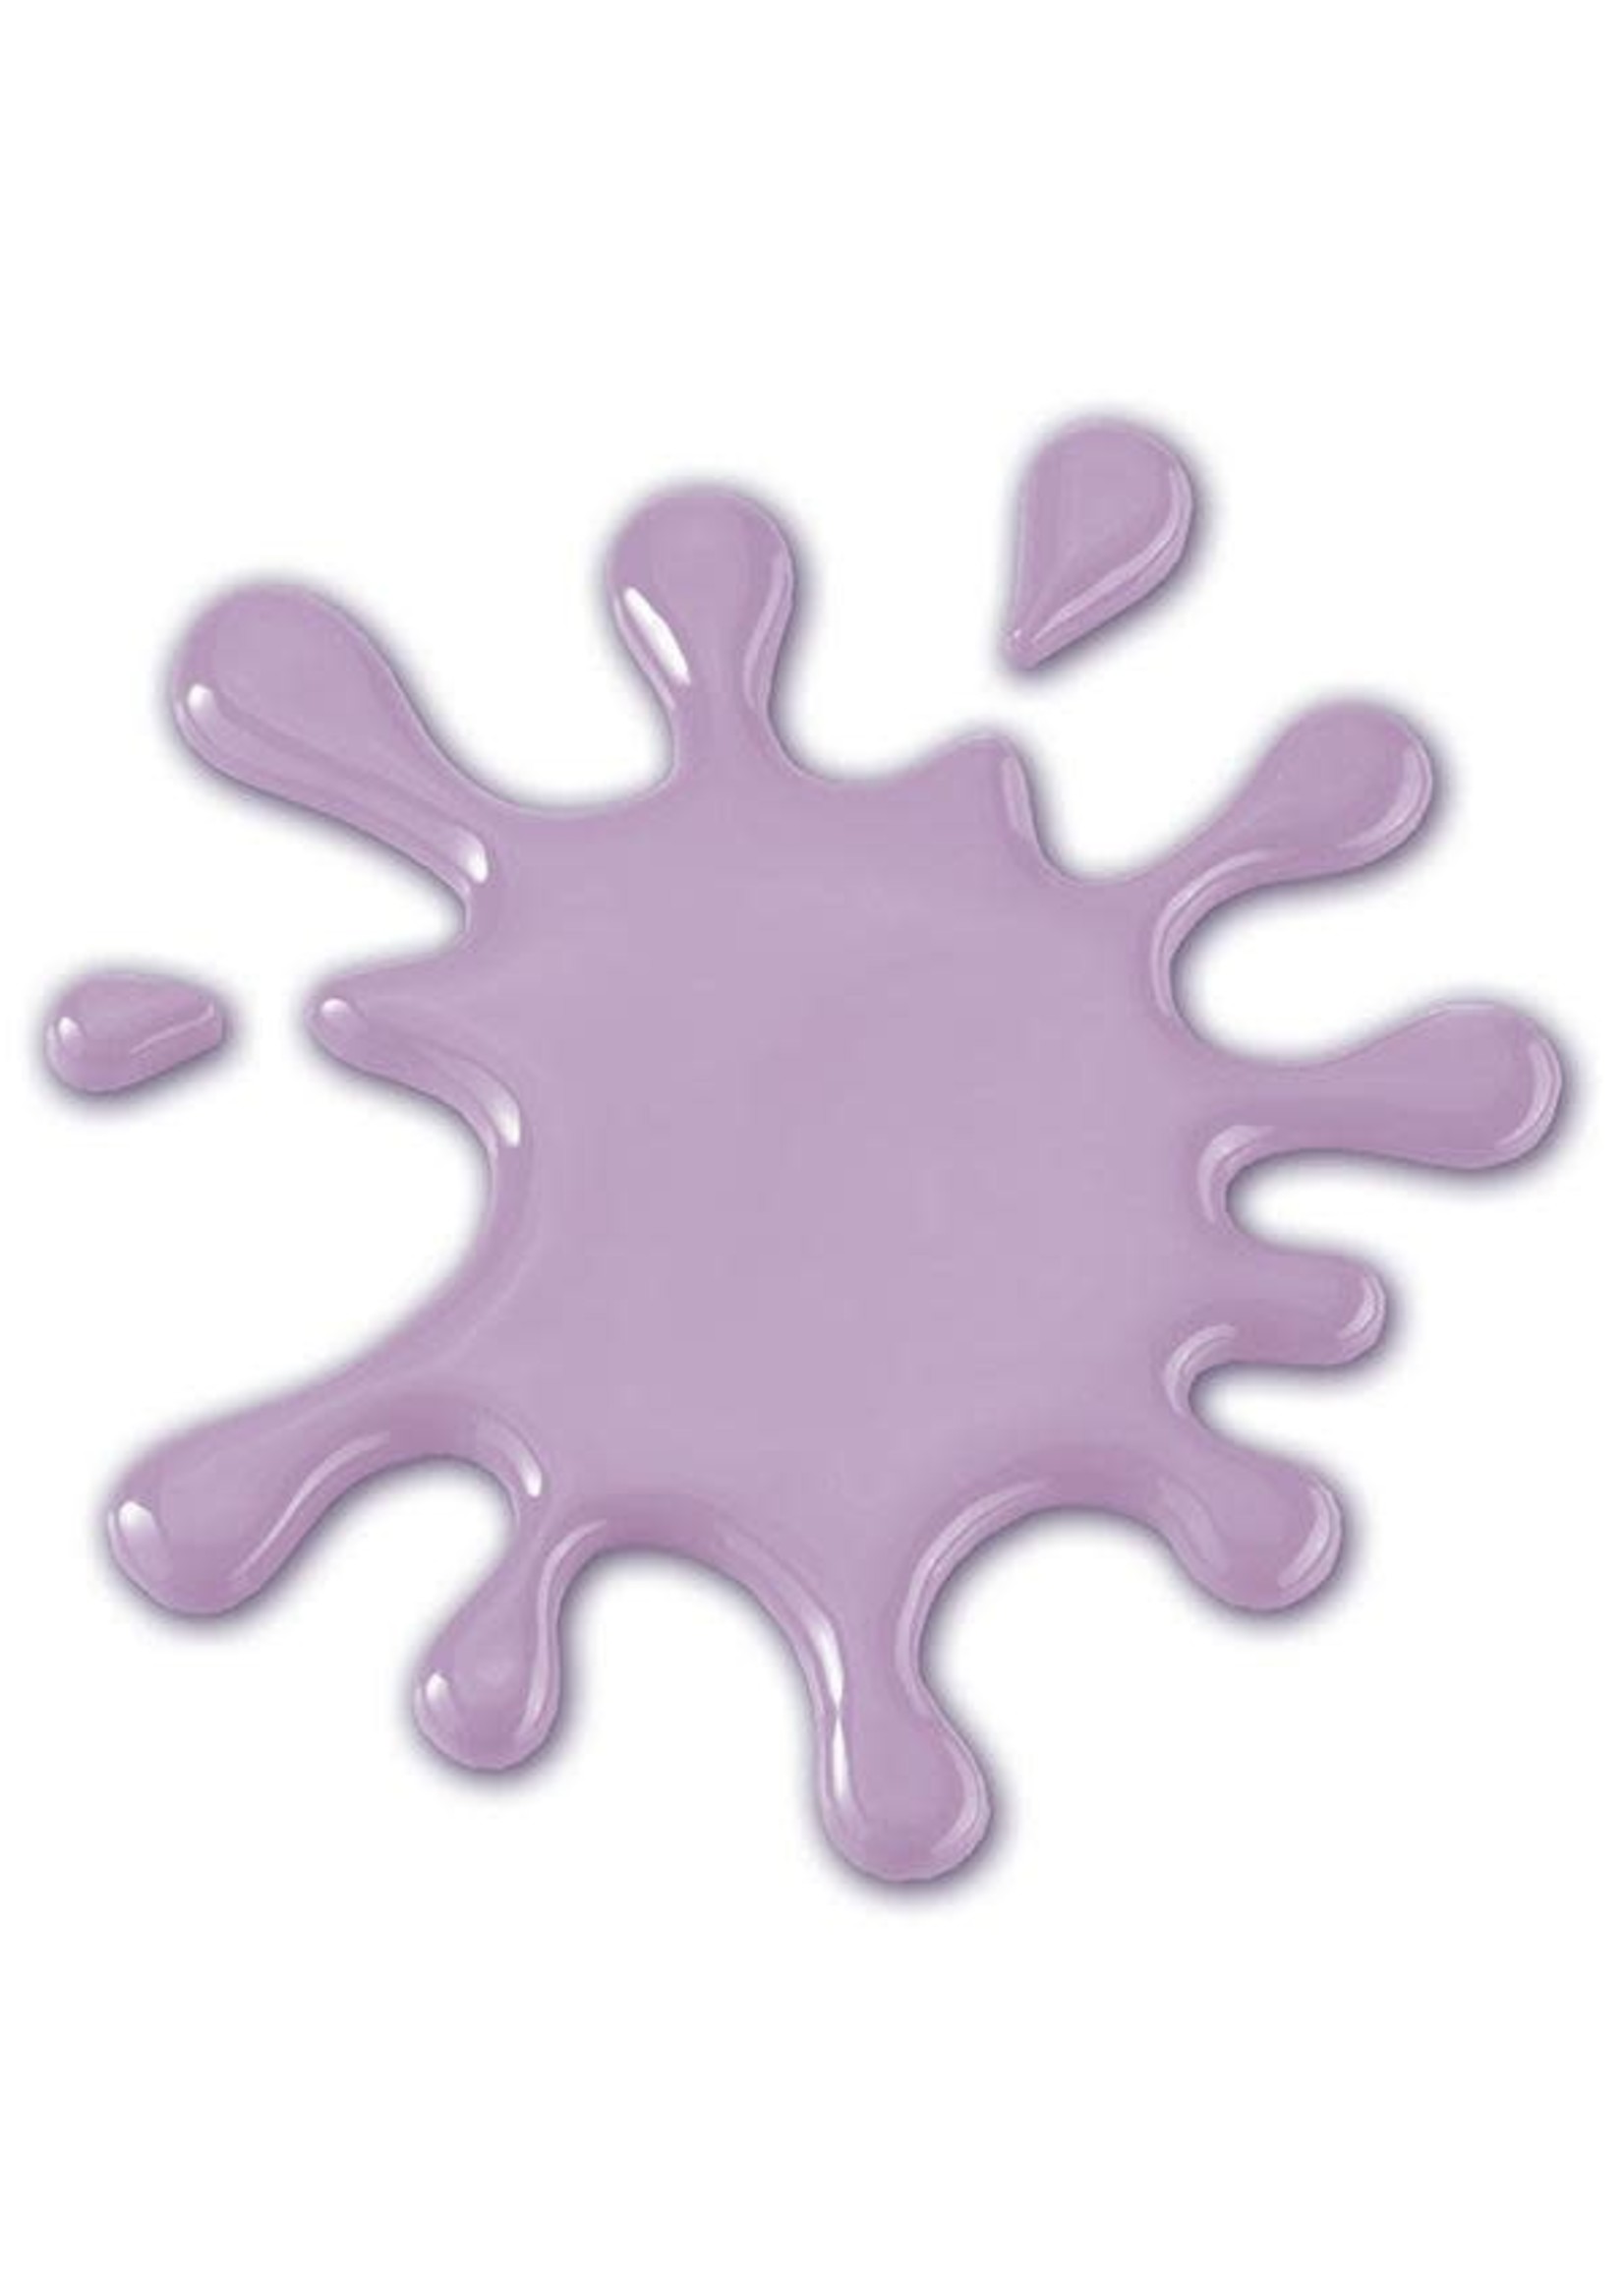 Gare, Inc. The Color Purple Paint